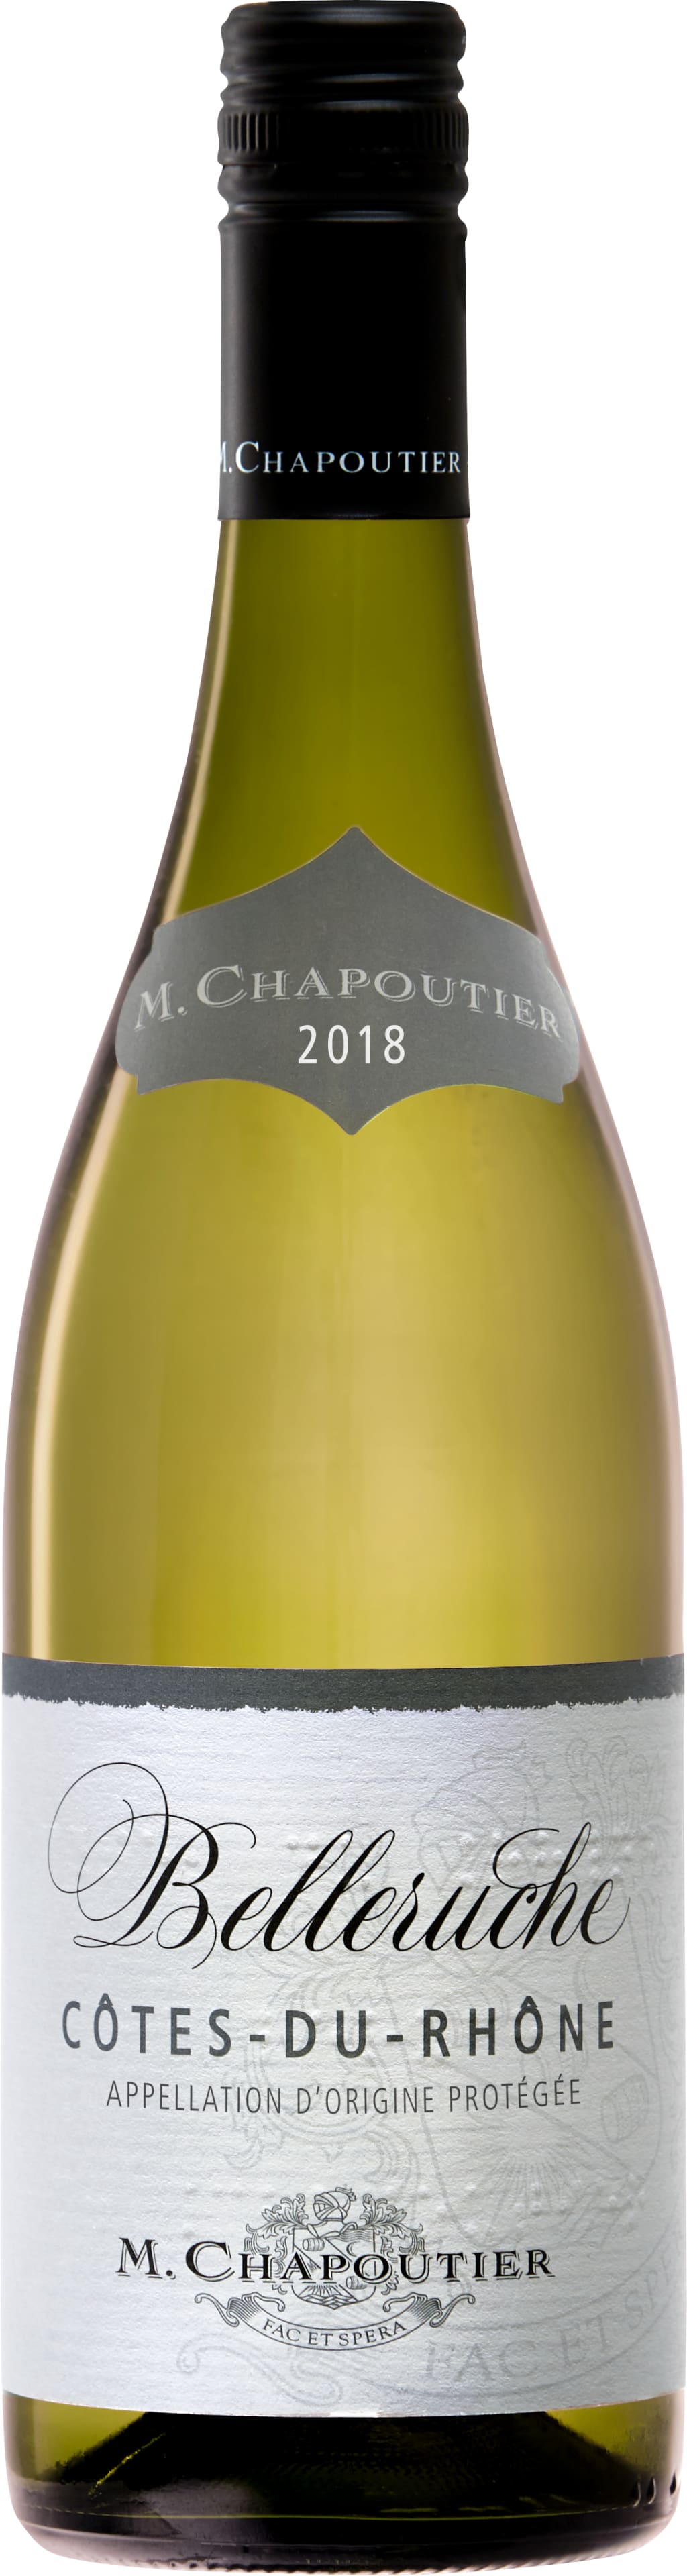 M. Chapoutier Cotes-Du-Rhone Blanc Belleruche 2020